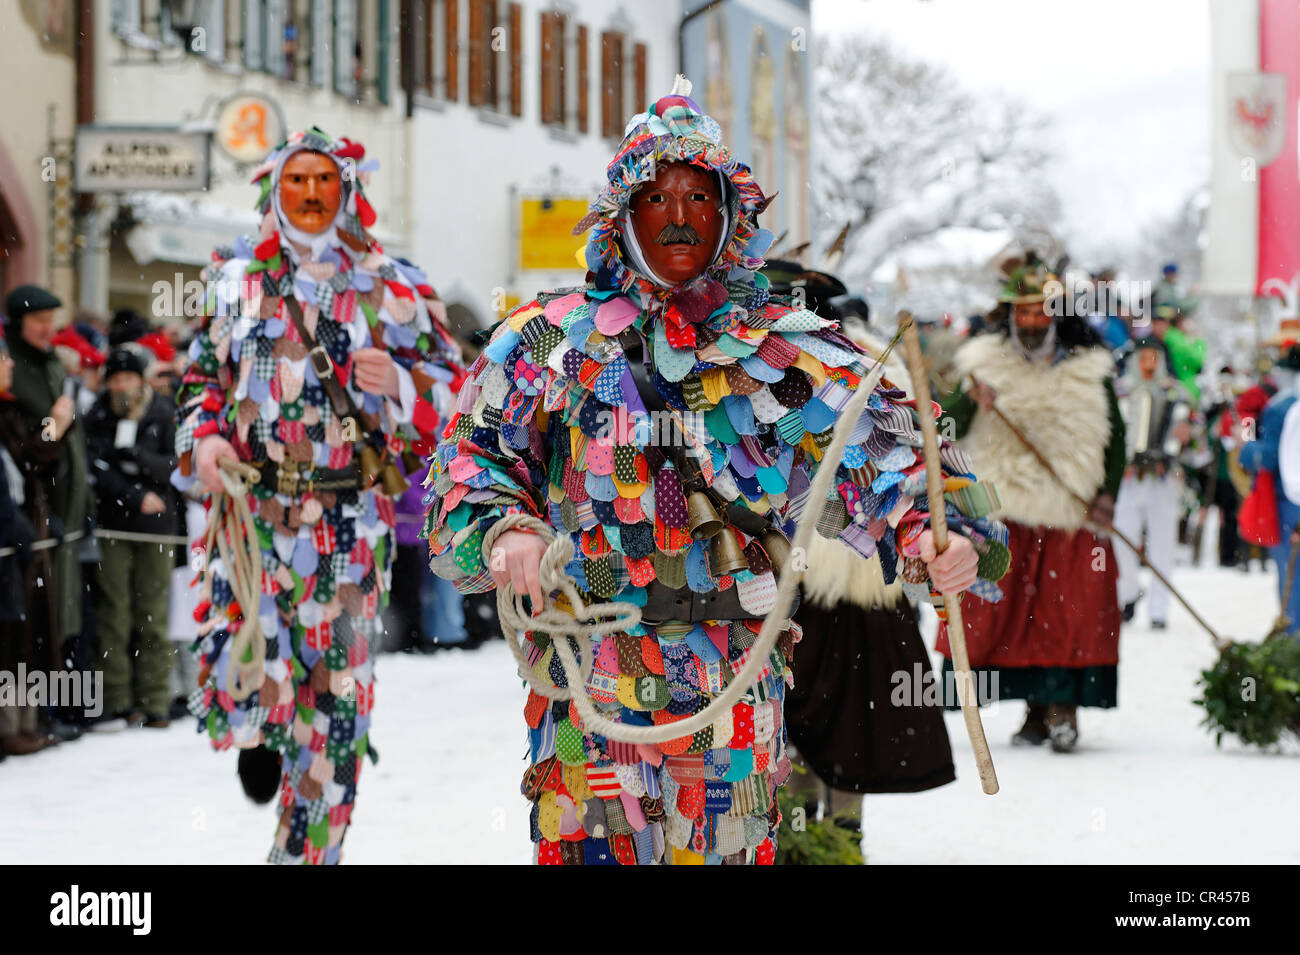 Männer, gekleidet in traditionellen Karnevalskostüme Karnevalsumzug,  Maschkera, Mittenwald, Werdenfelser Land, Oberbayern Stockfotografie - Alamy